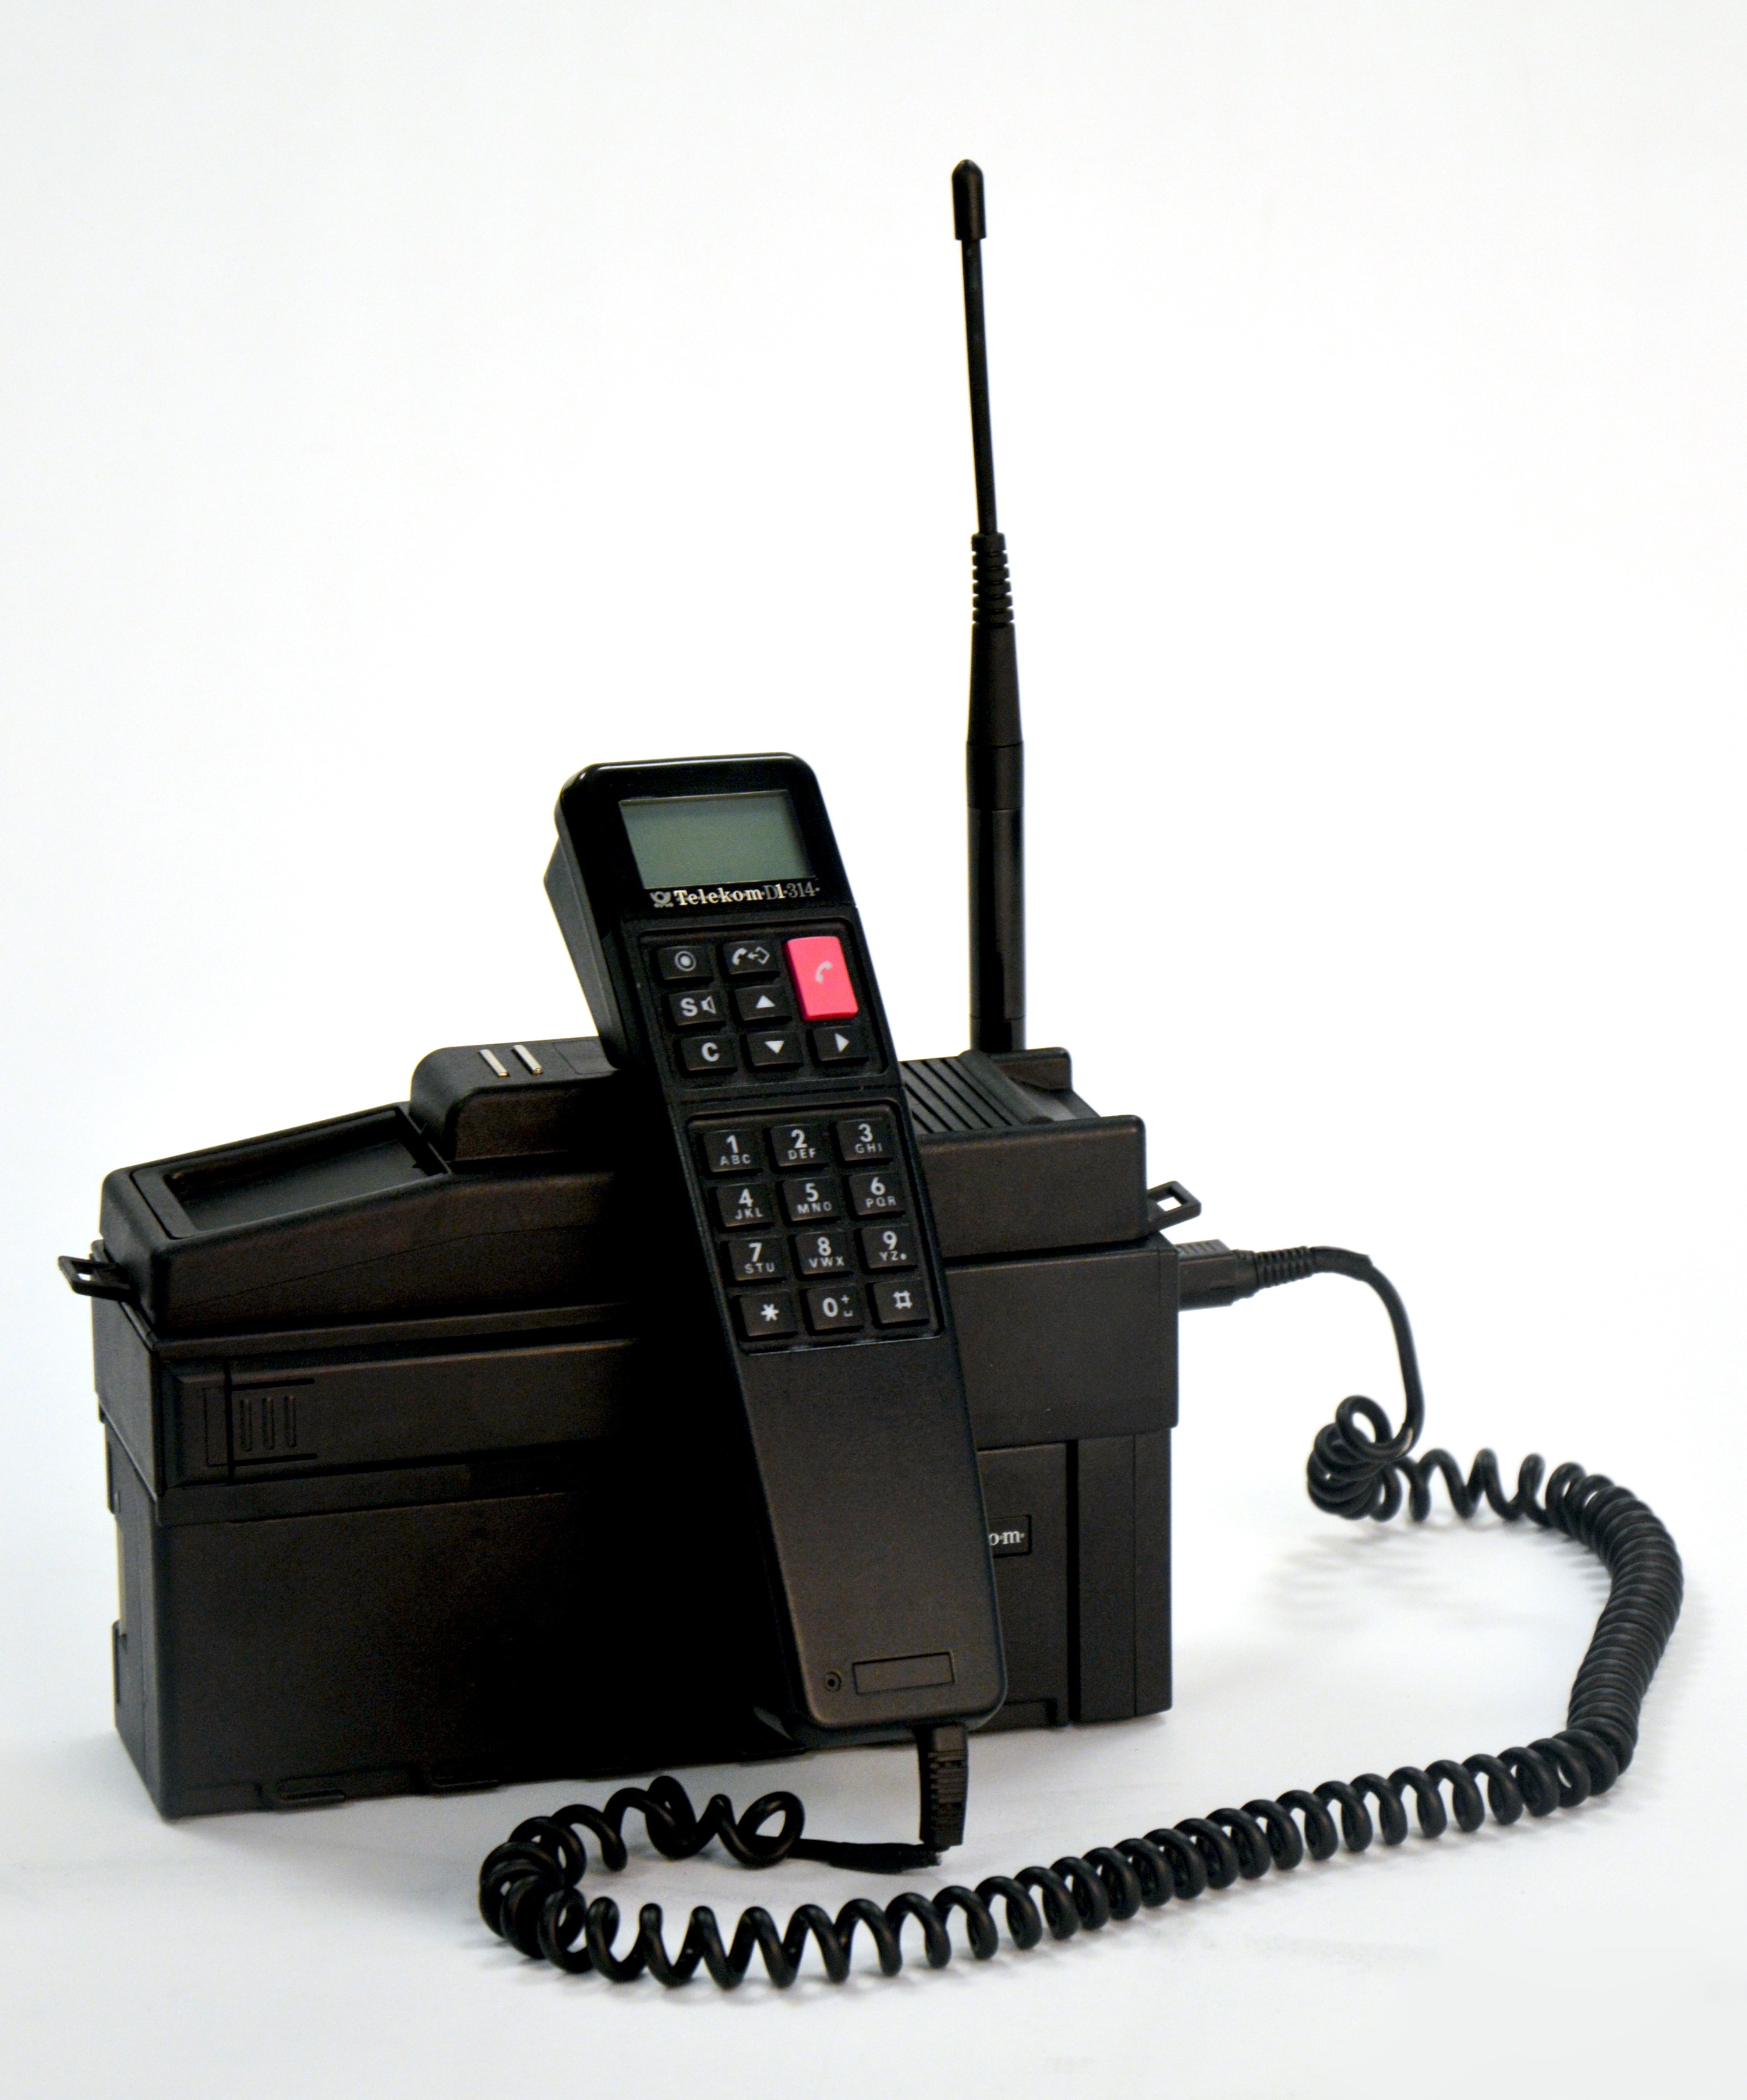 Mobiletelefon. Siemens p1 GSM. Сотовый телефон Siemens p1. Сименс мобильный радиотелефон 90-е. Telekom d1-324.